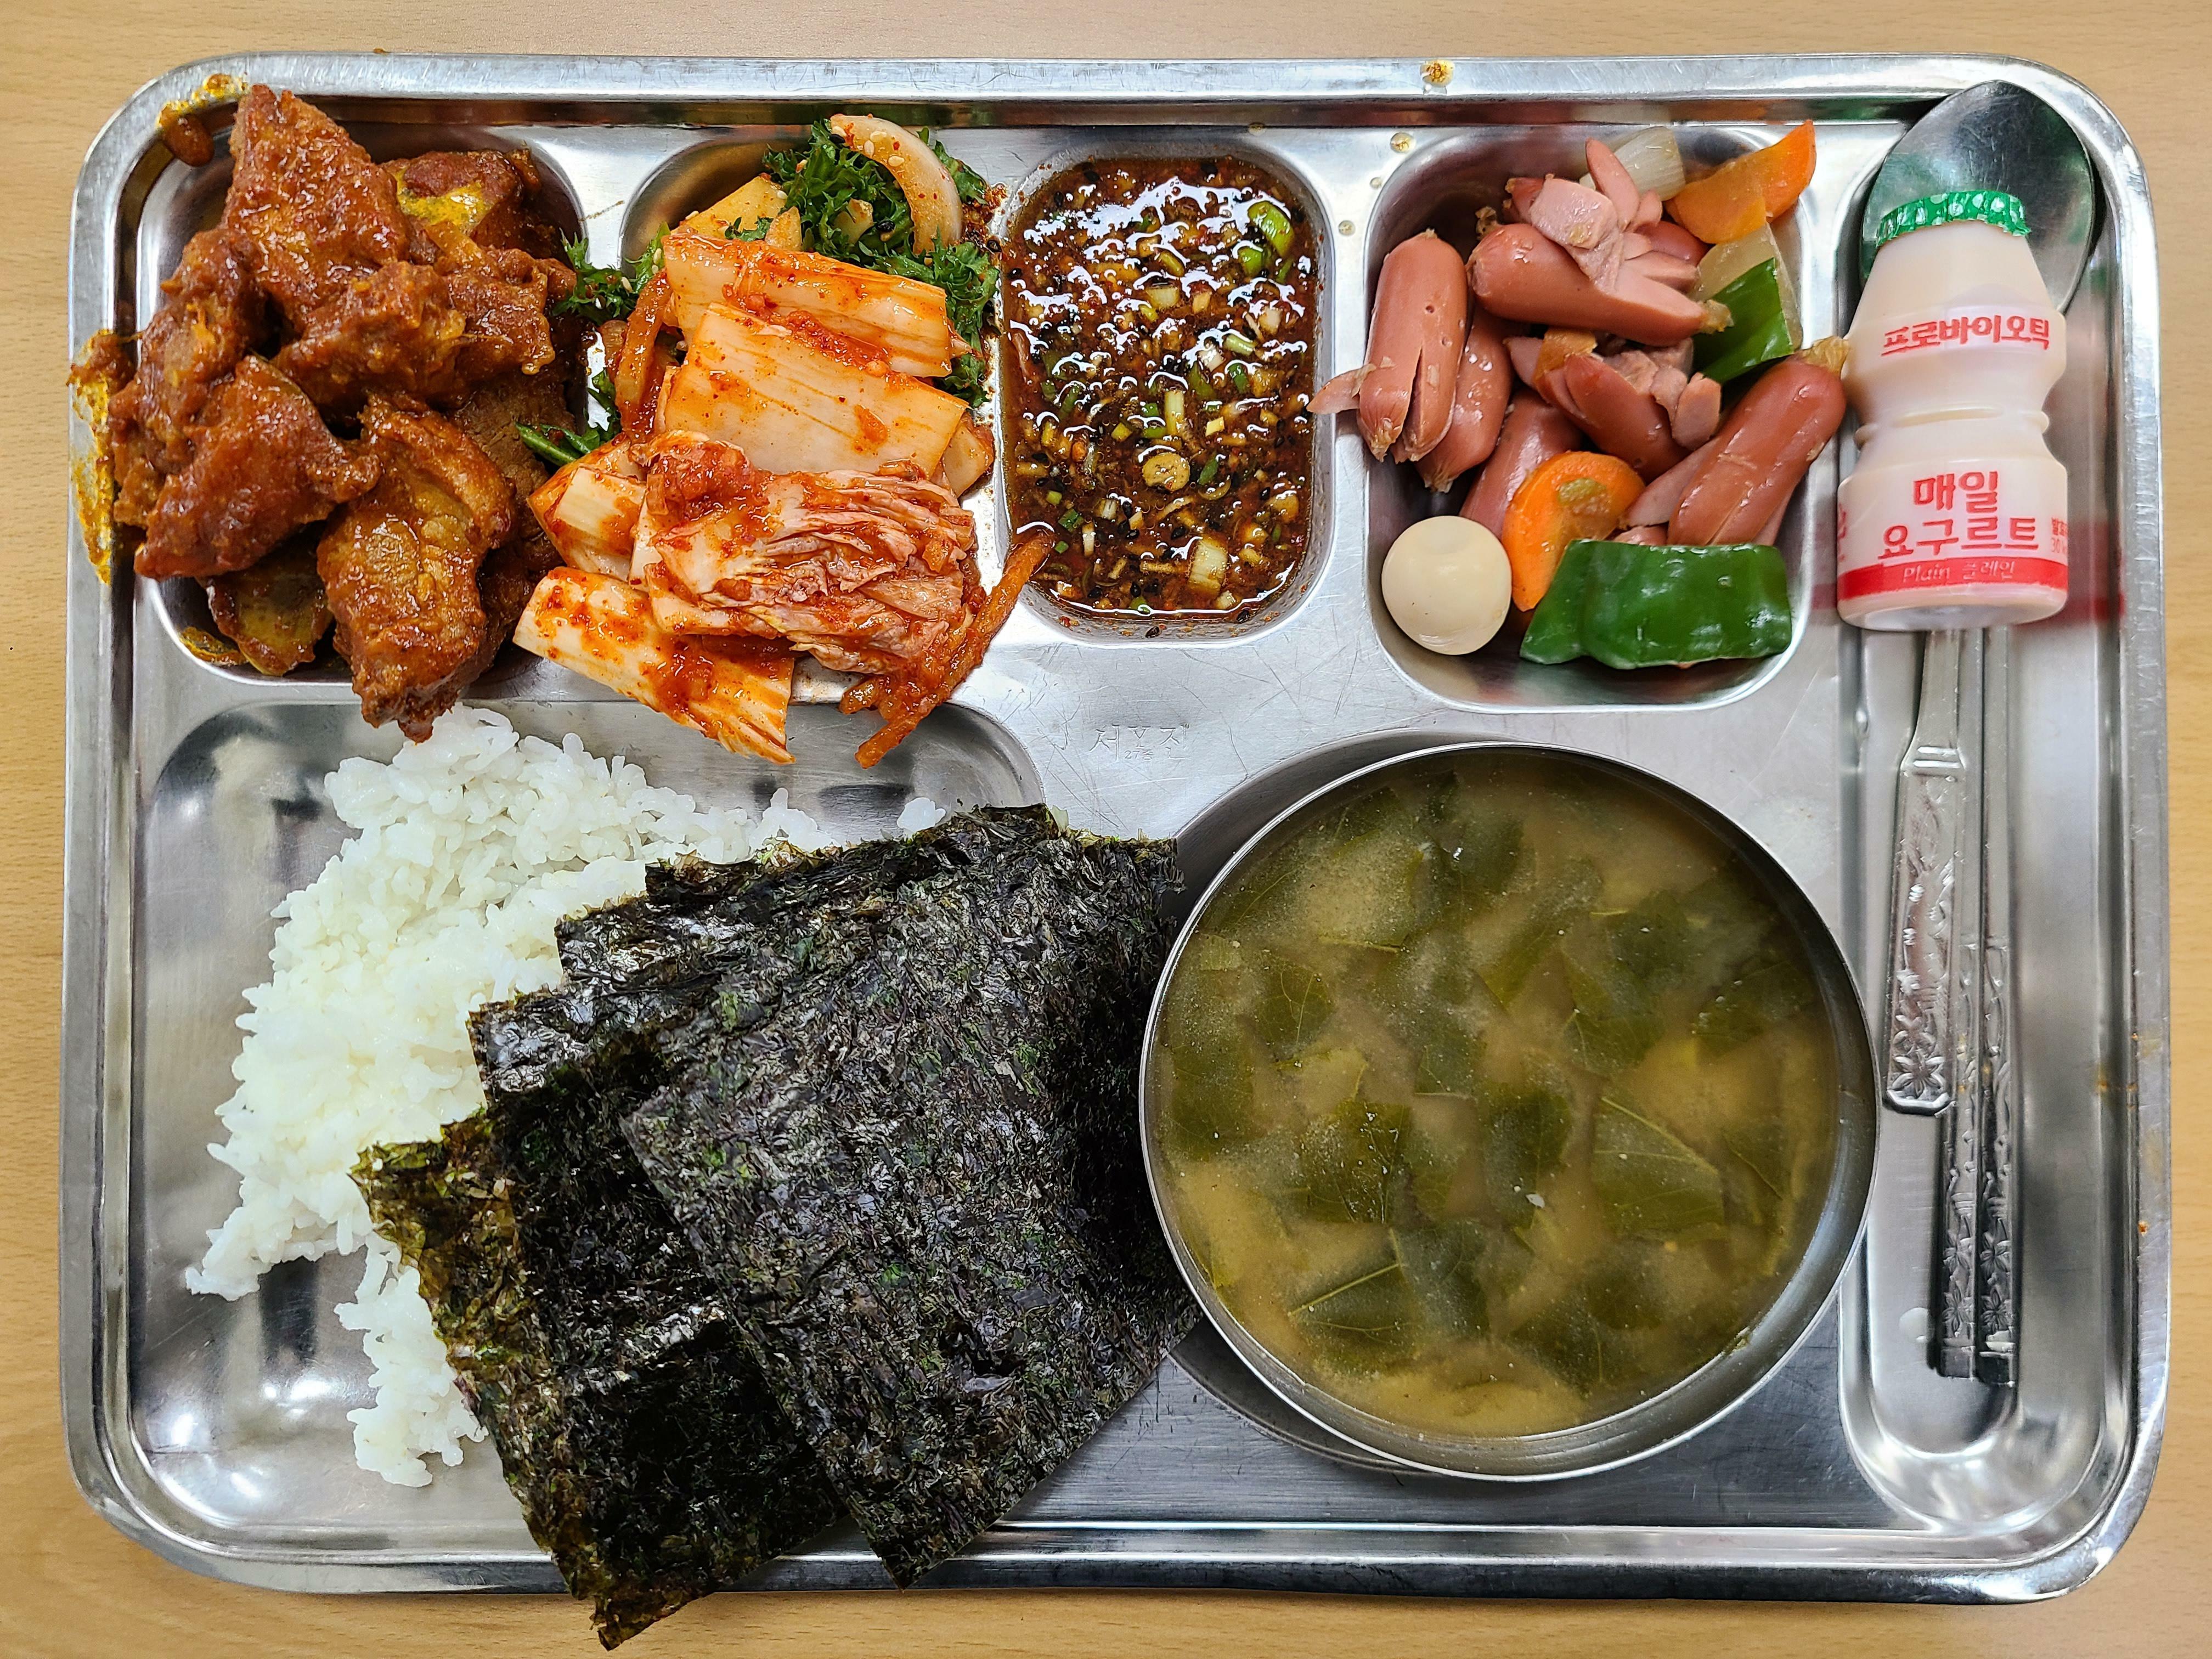 Le déjeuner de mon école coréenne !! gratuit pour tous les élèves